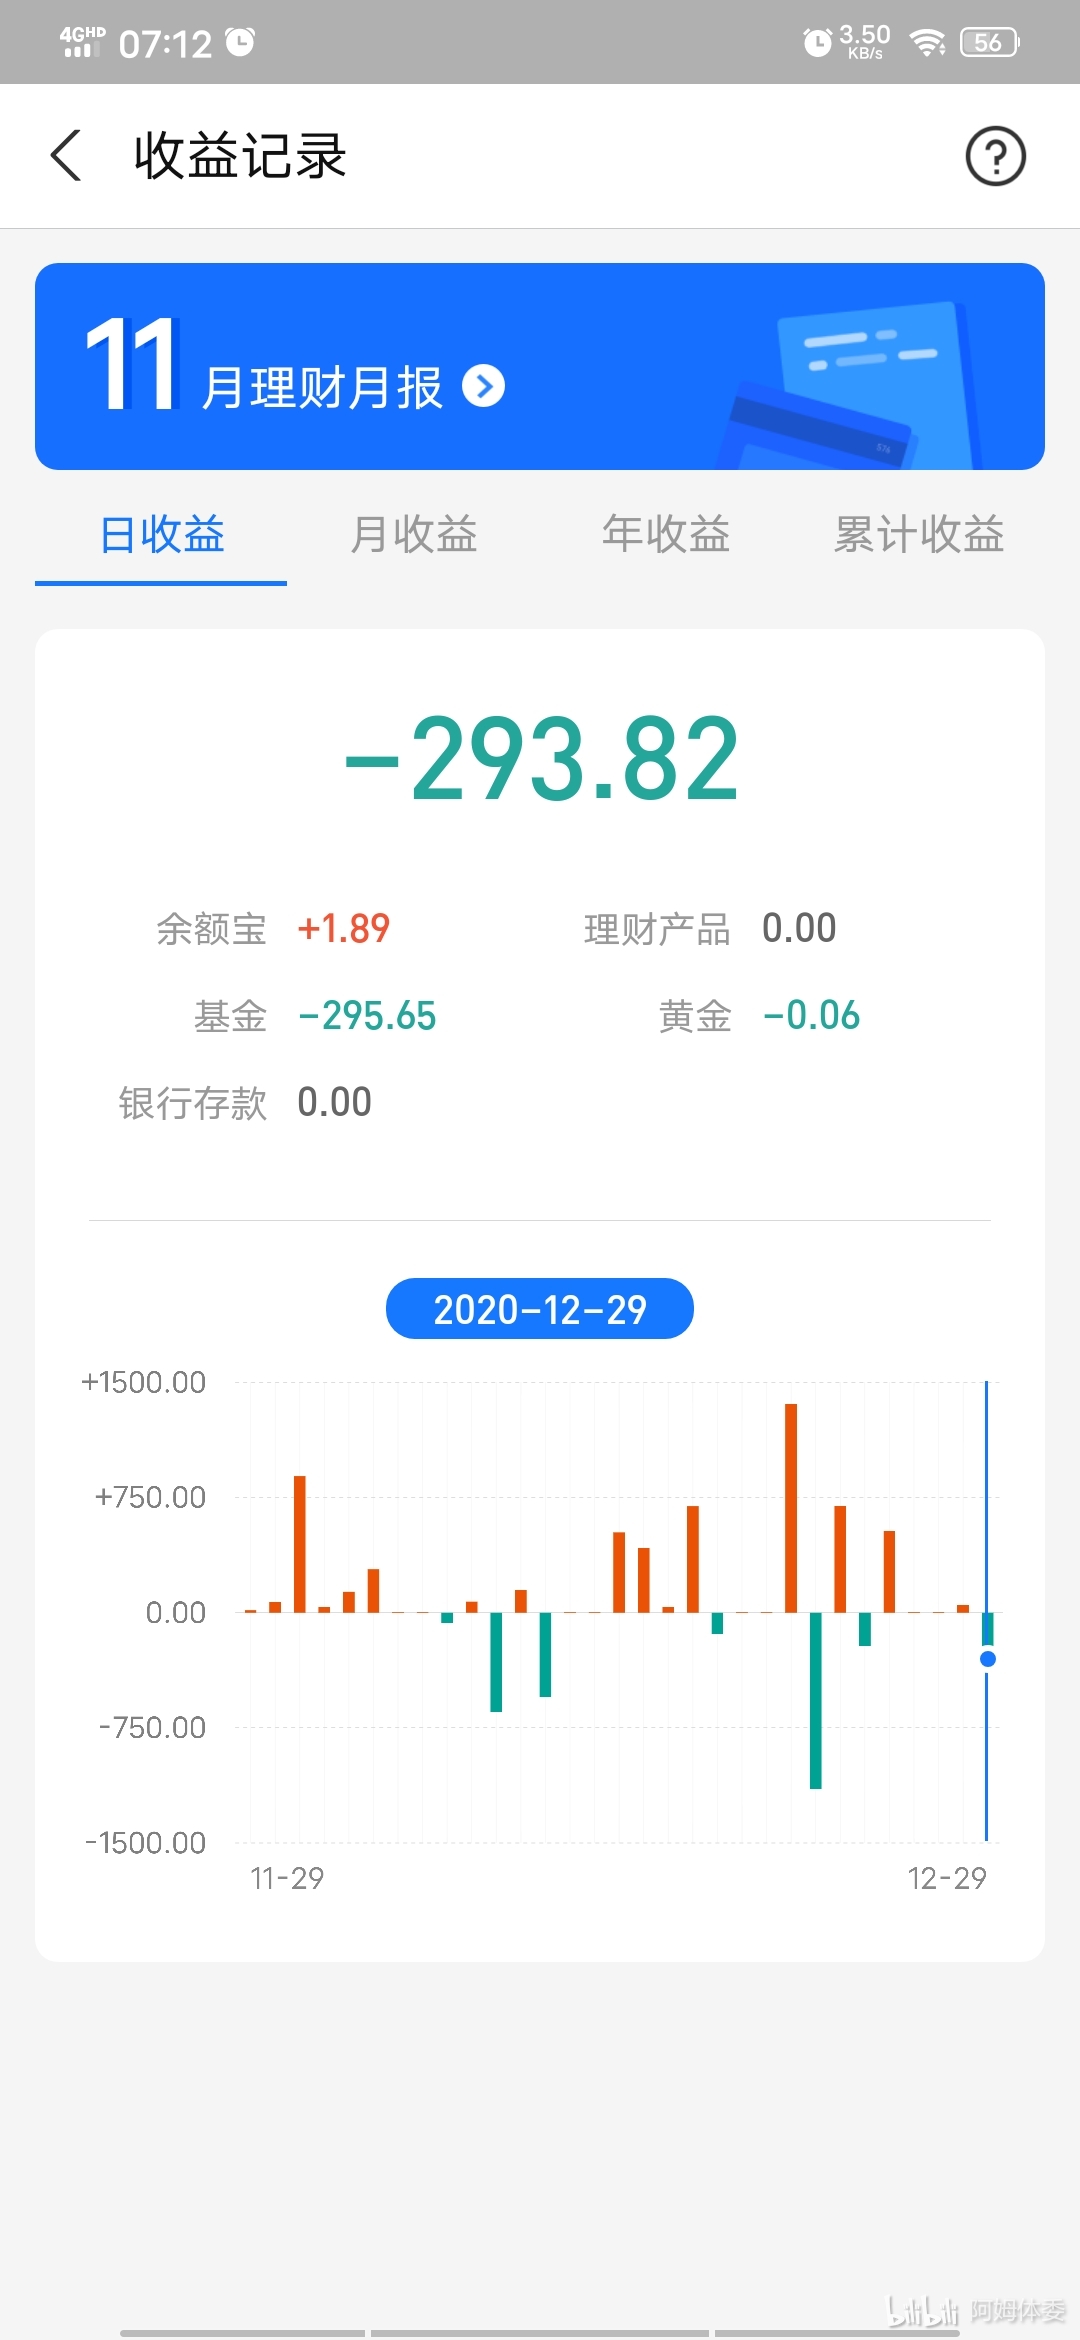 [理财] 2020年12月30日收益 -294元 (`v`) 今天行情涨了不少, 决定止盈创业板.1